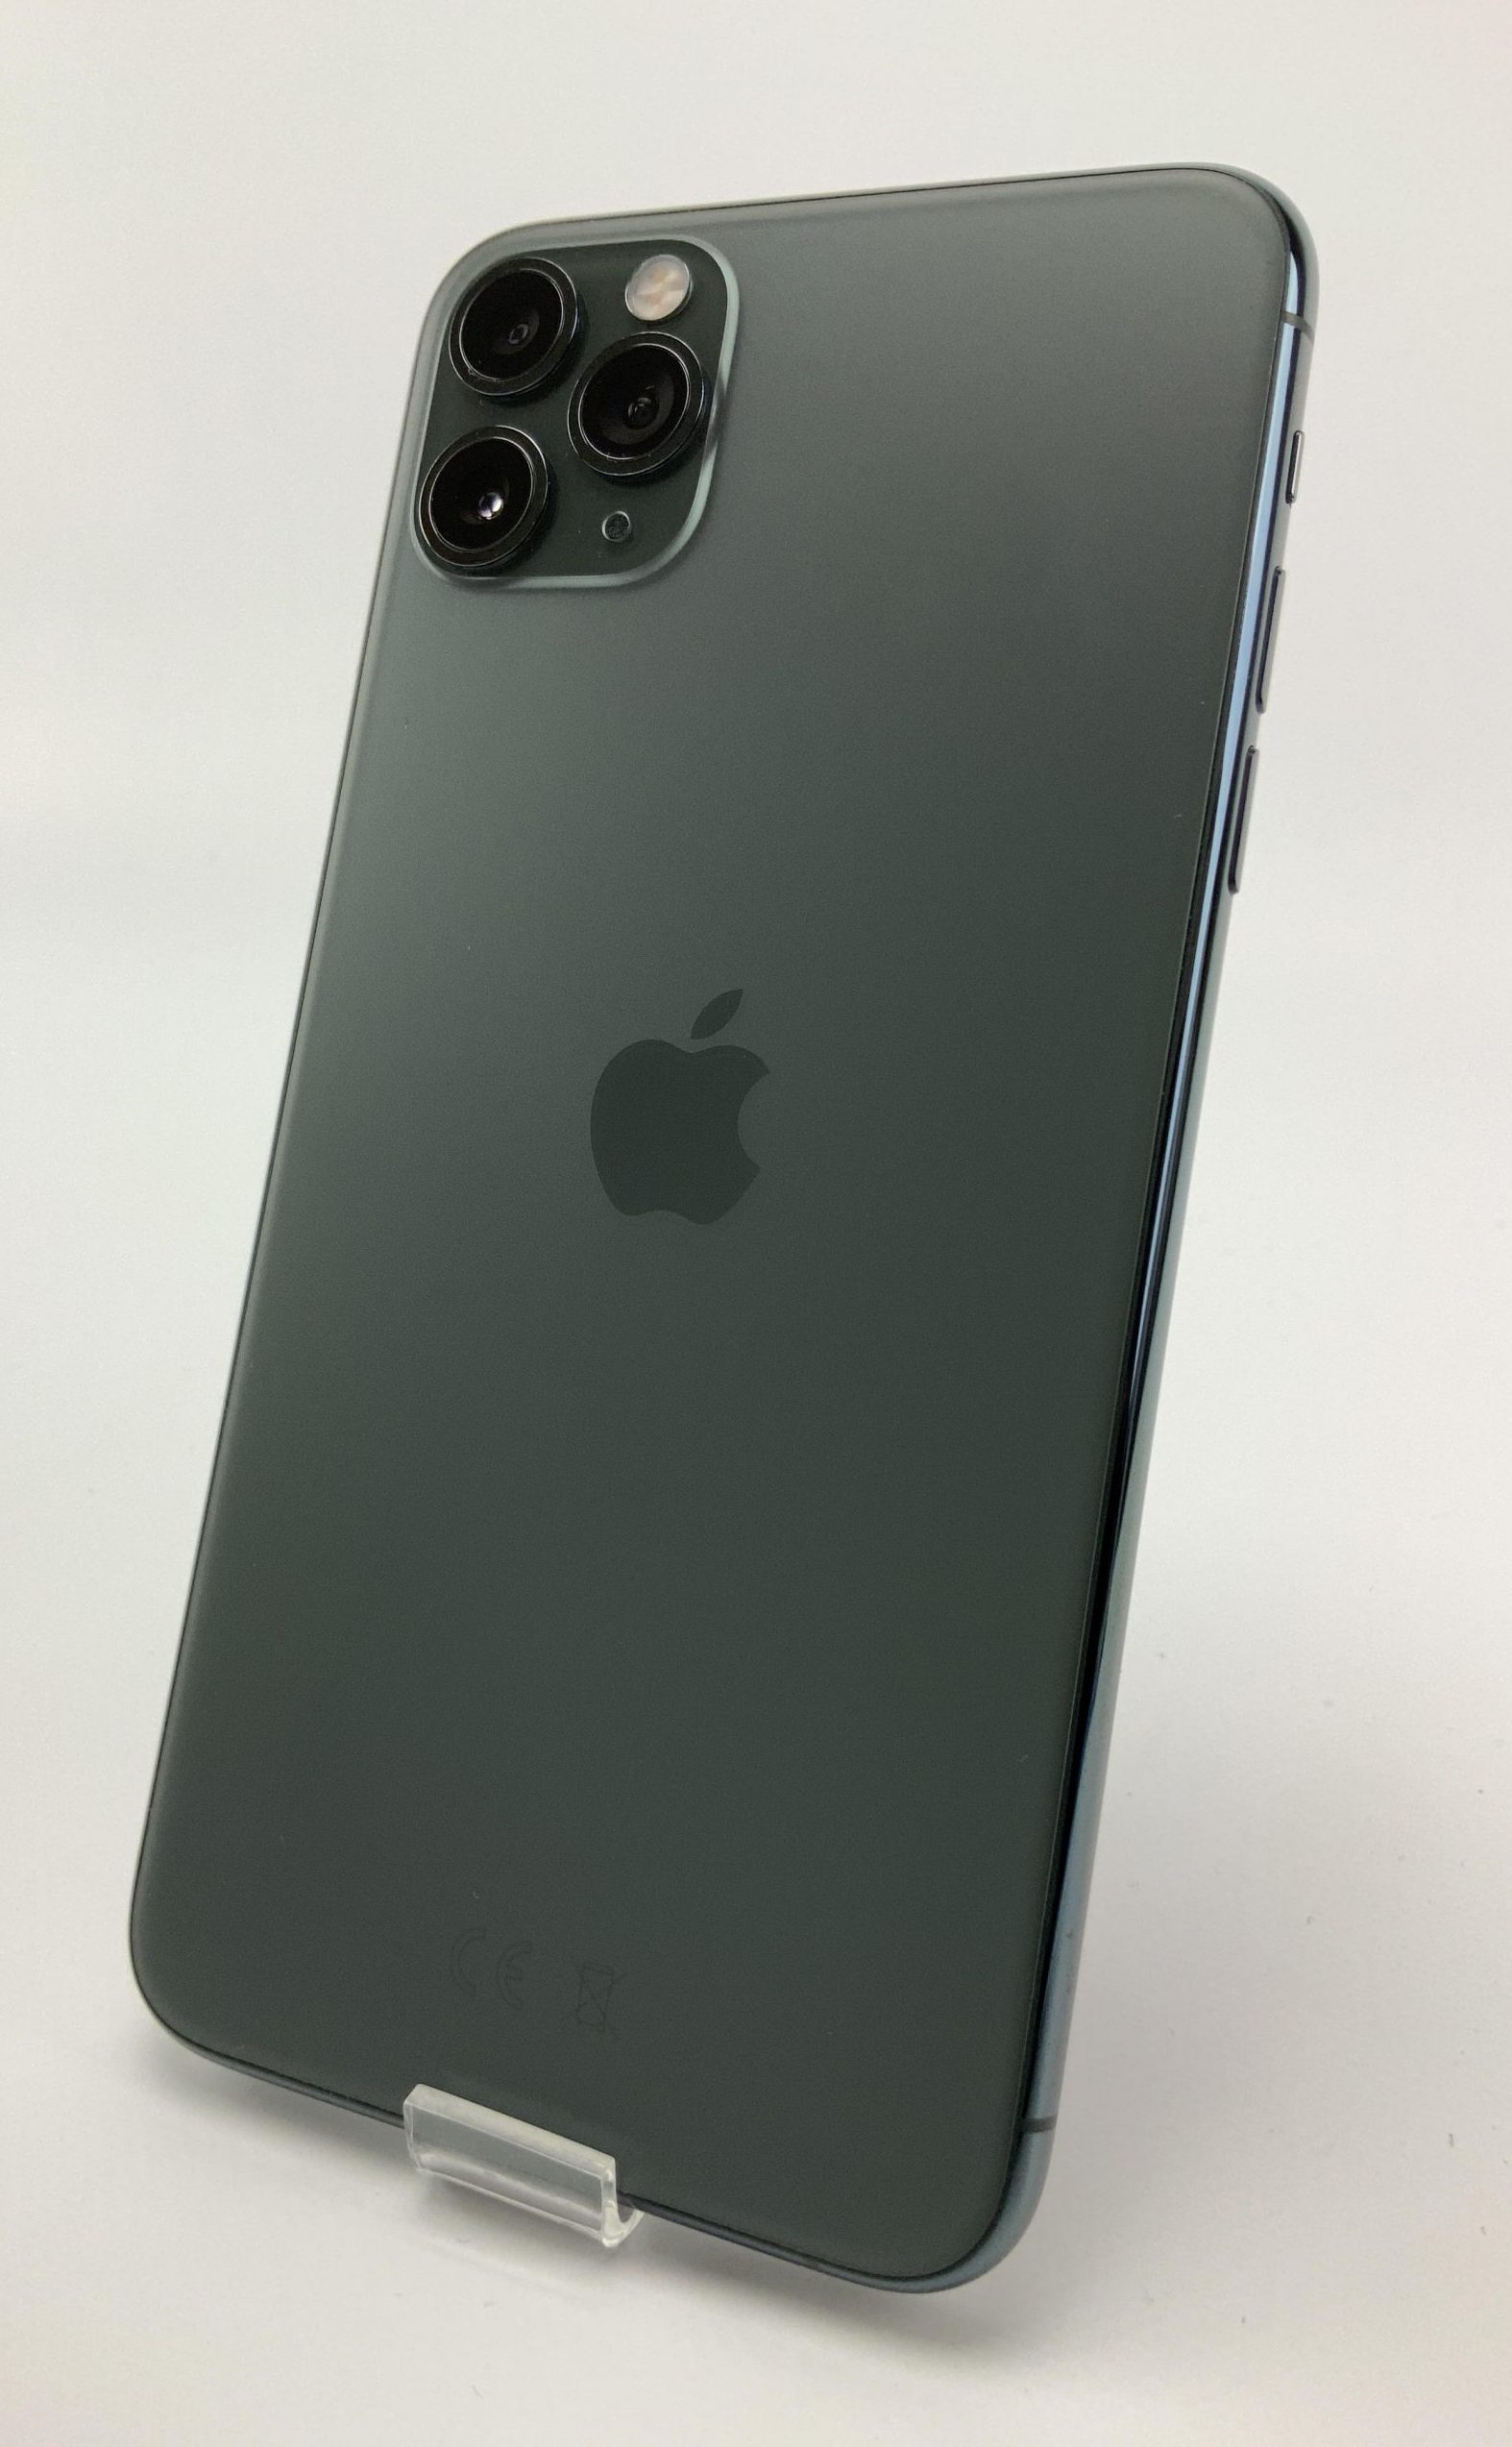 iPhone 11 Pro Max 64GB, 64GB, Midnight Green, bild 2